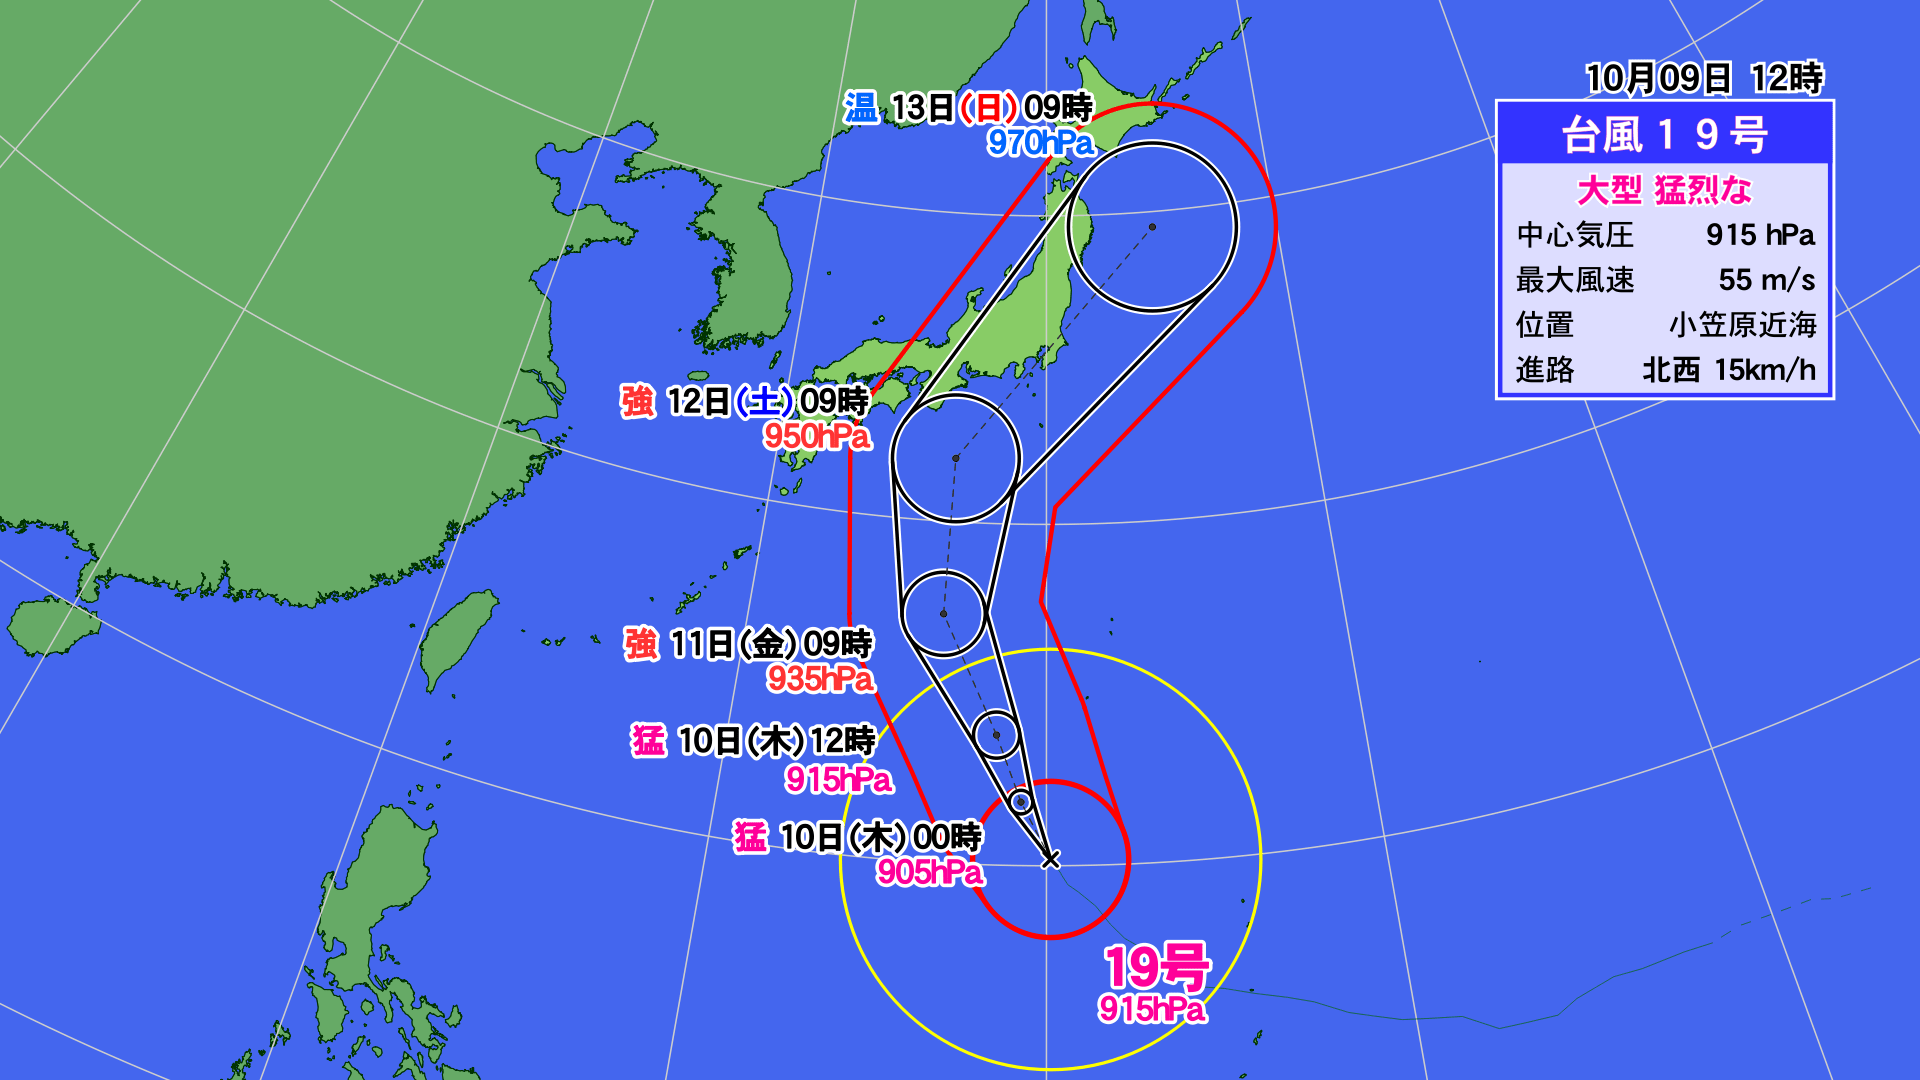 台風19号が10月だからこそ厳重警戒が必要な訳 天気 天候 東洋経済オンライン 経済ニュースの新基準